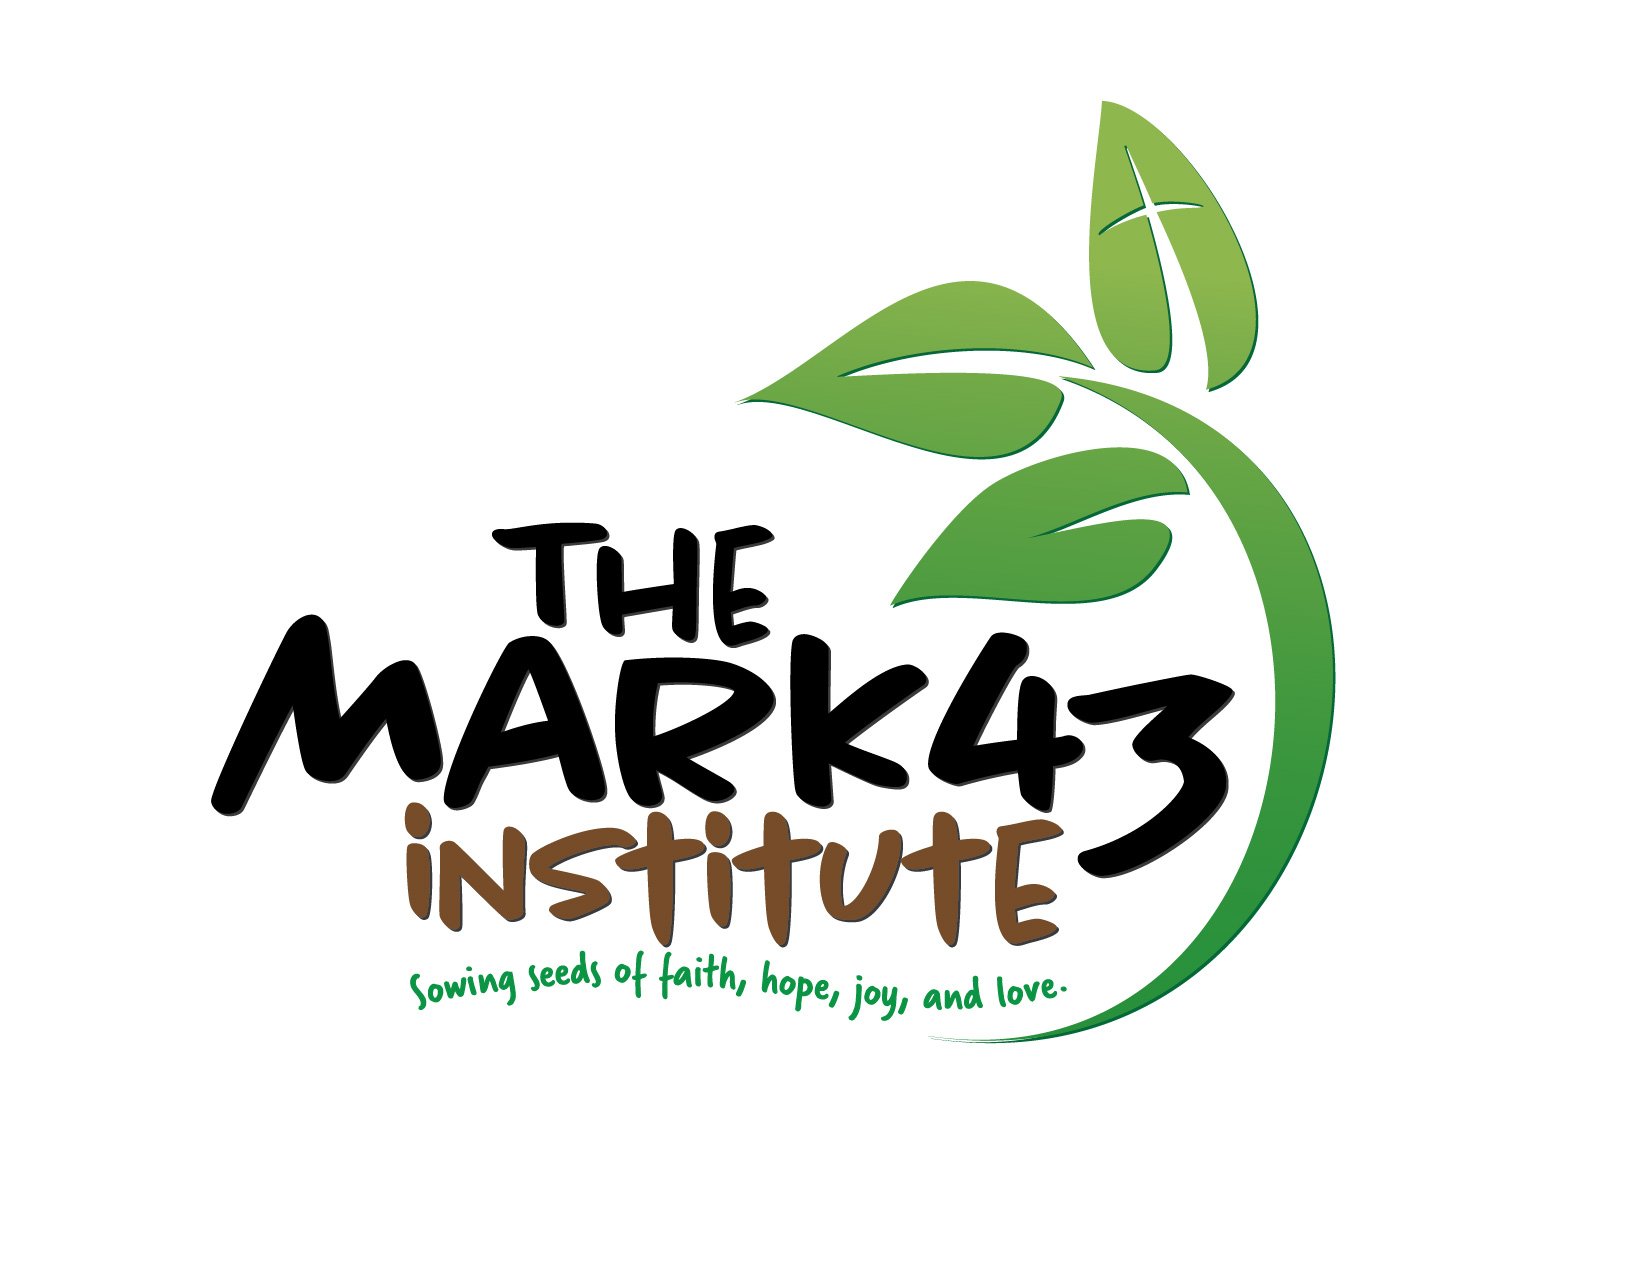 The Mark43 Institute